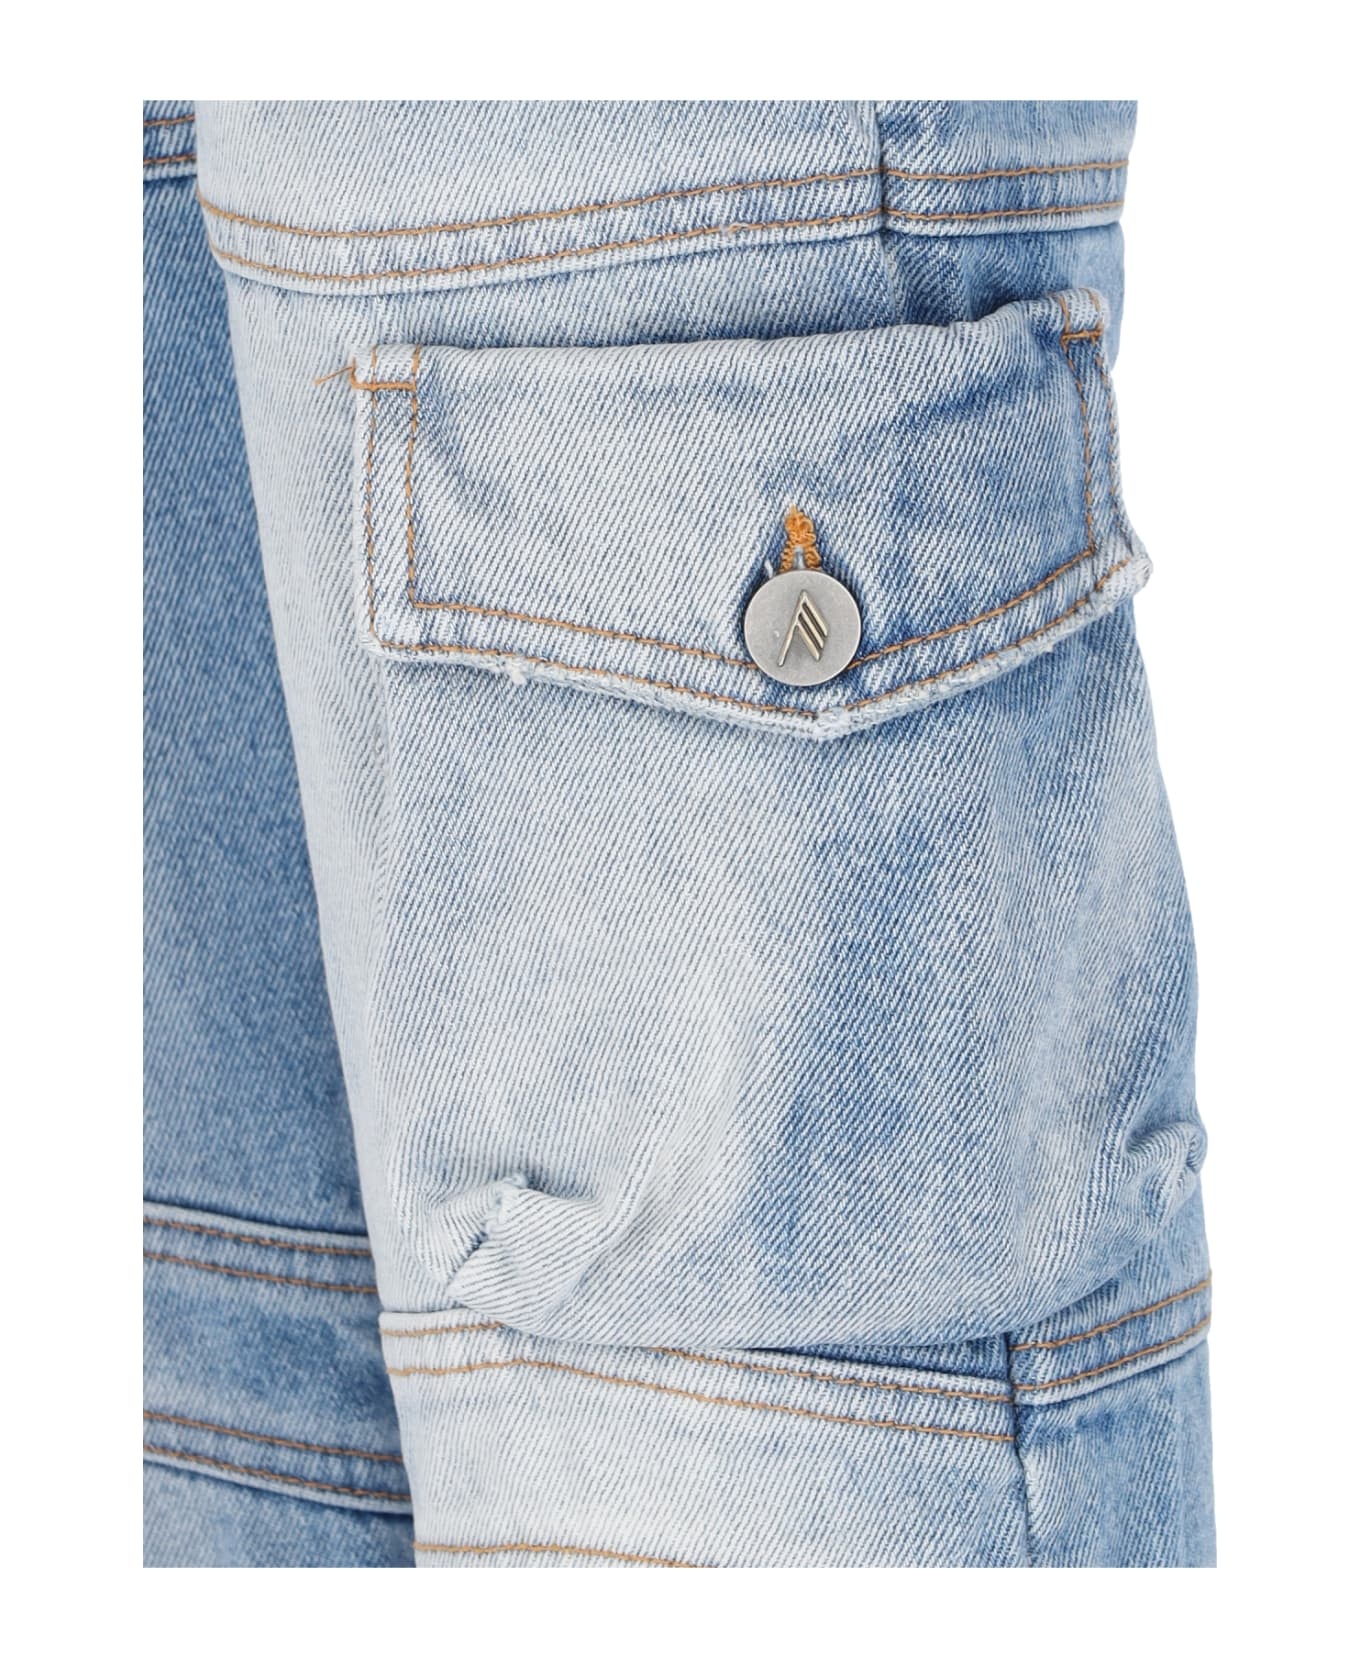 'essie' Jeans - 5